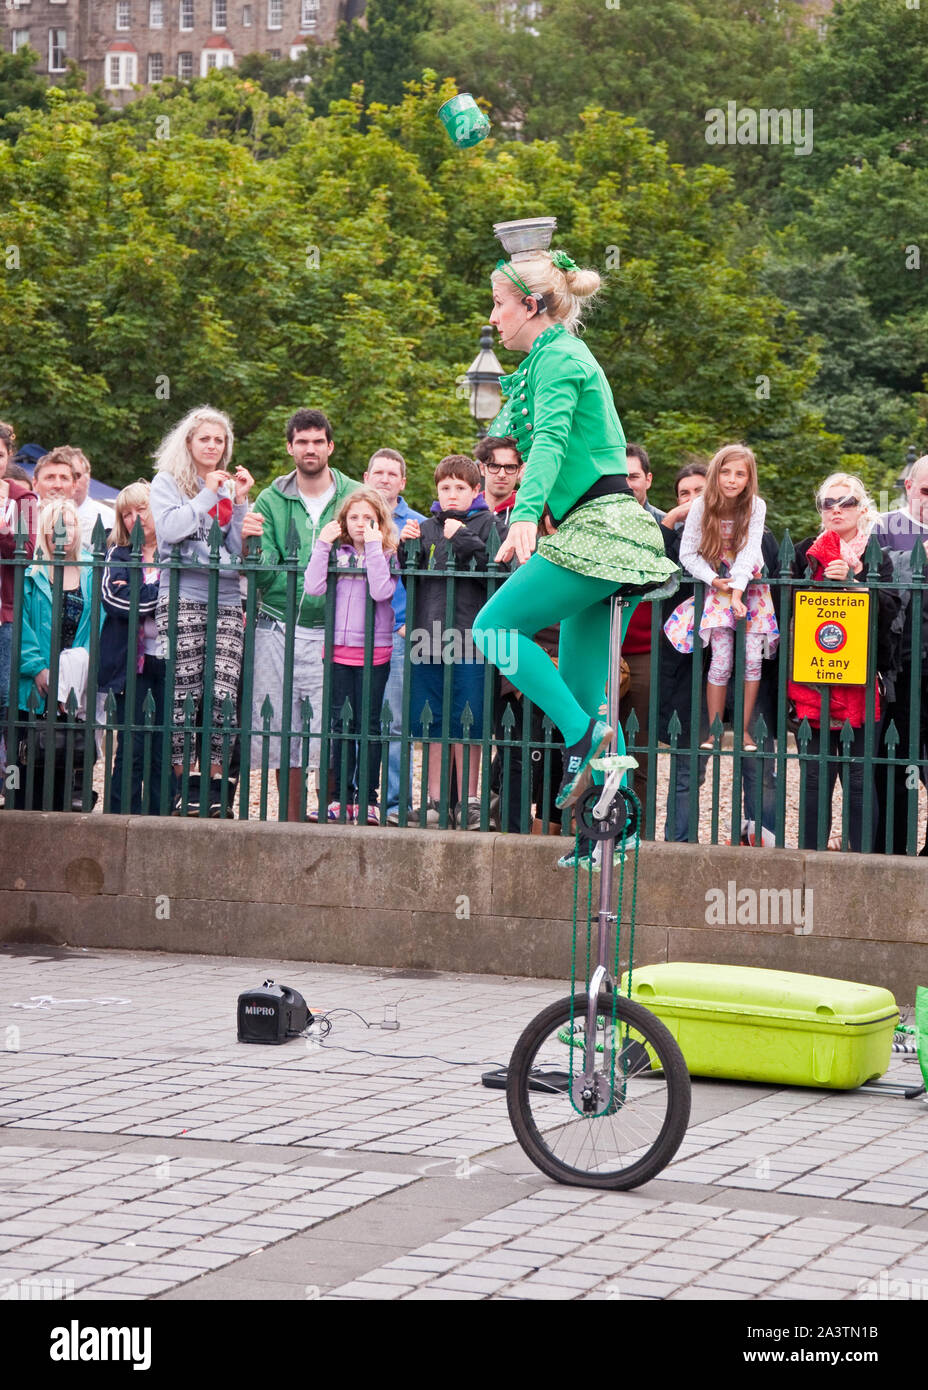 Interprète de rue sur monocycle. Festival Fringe d'Édimbourg. The Mound, Édimbourg, Écosse Banque D'Images